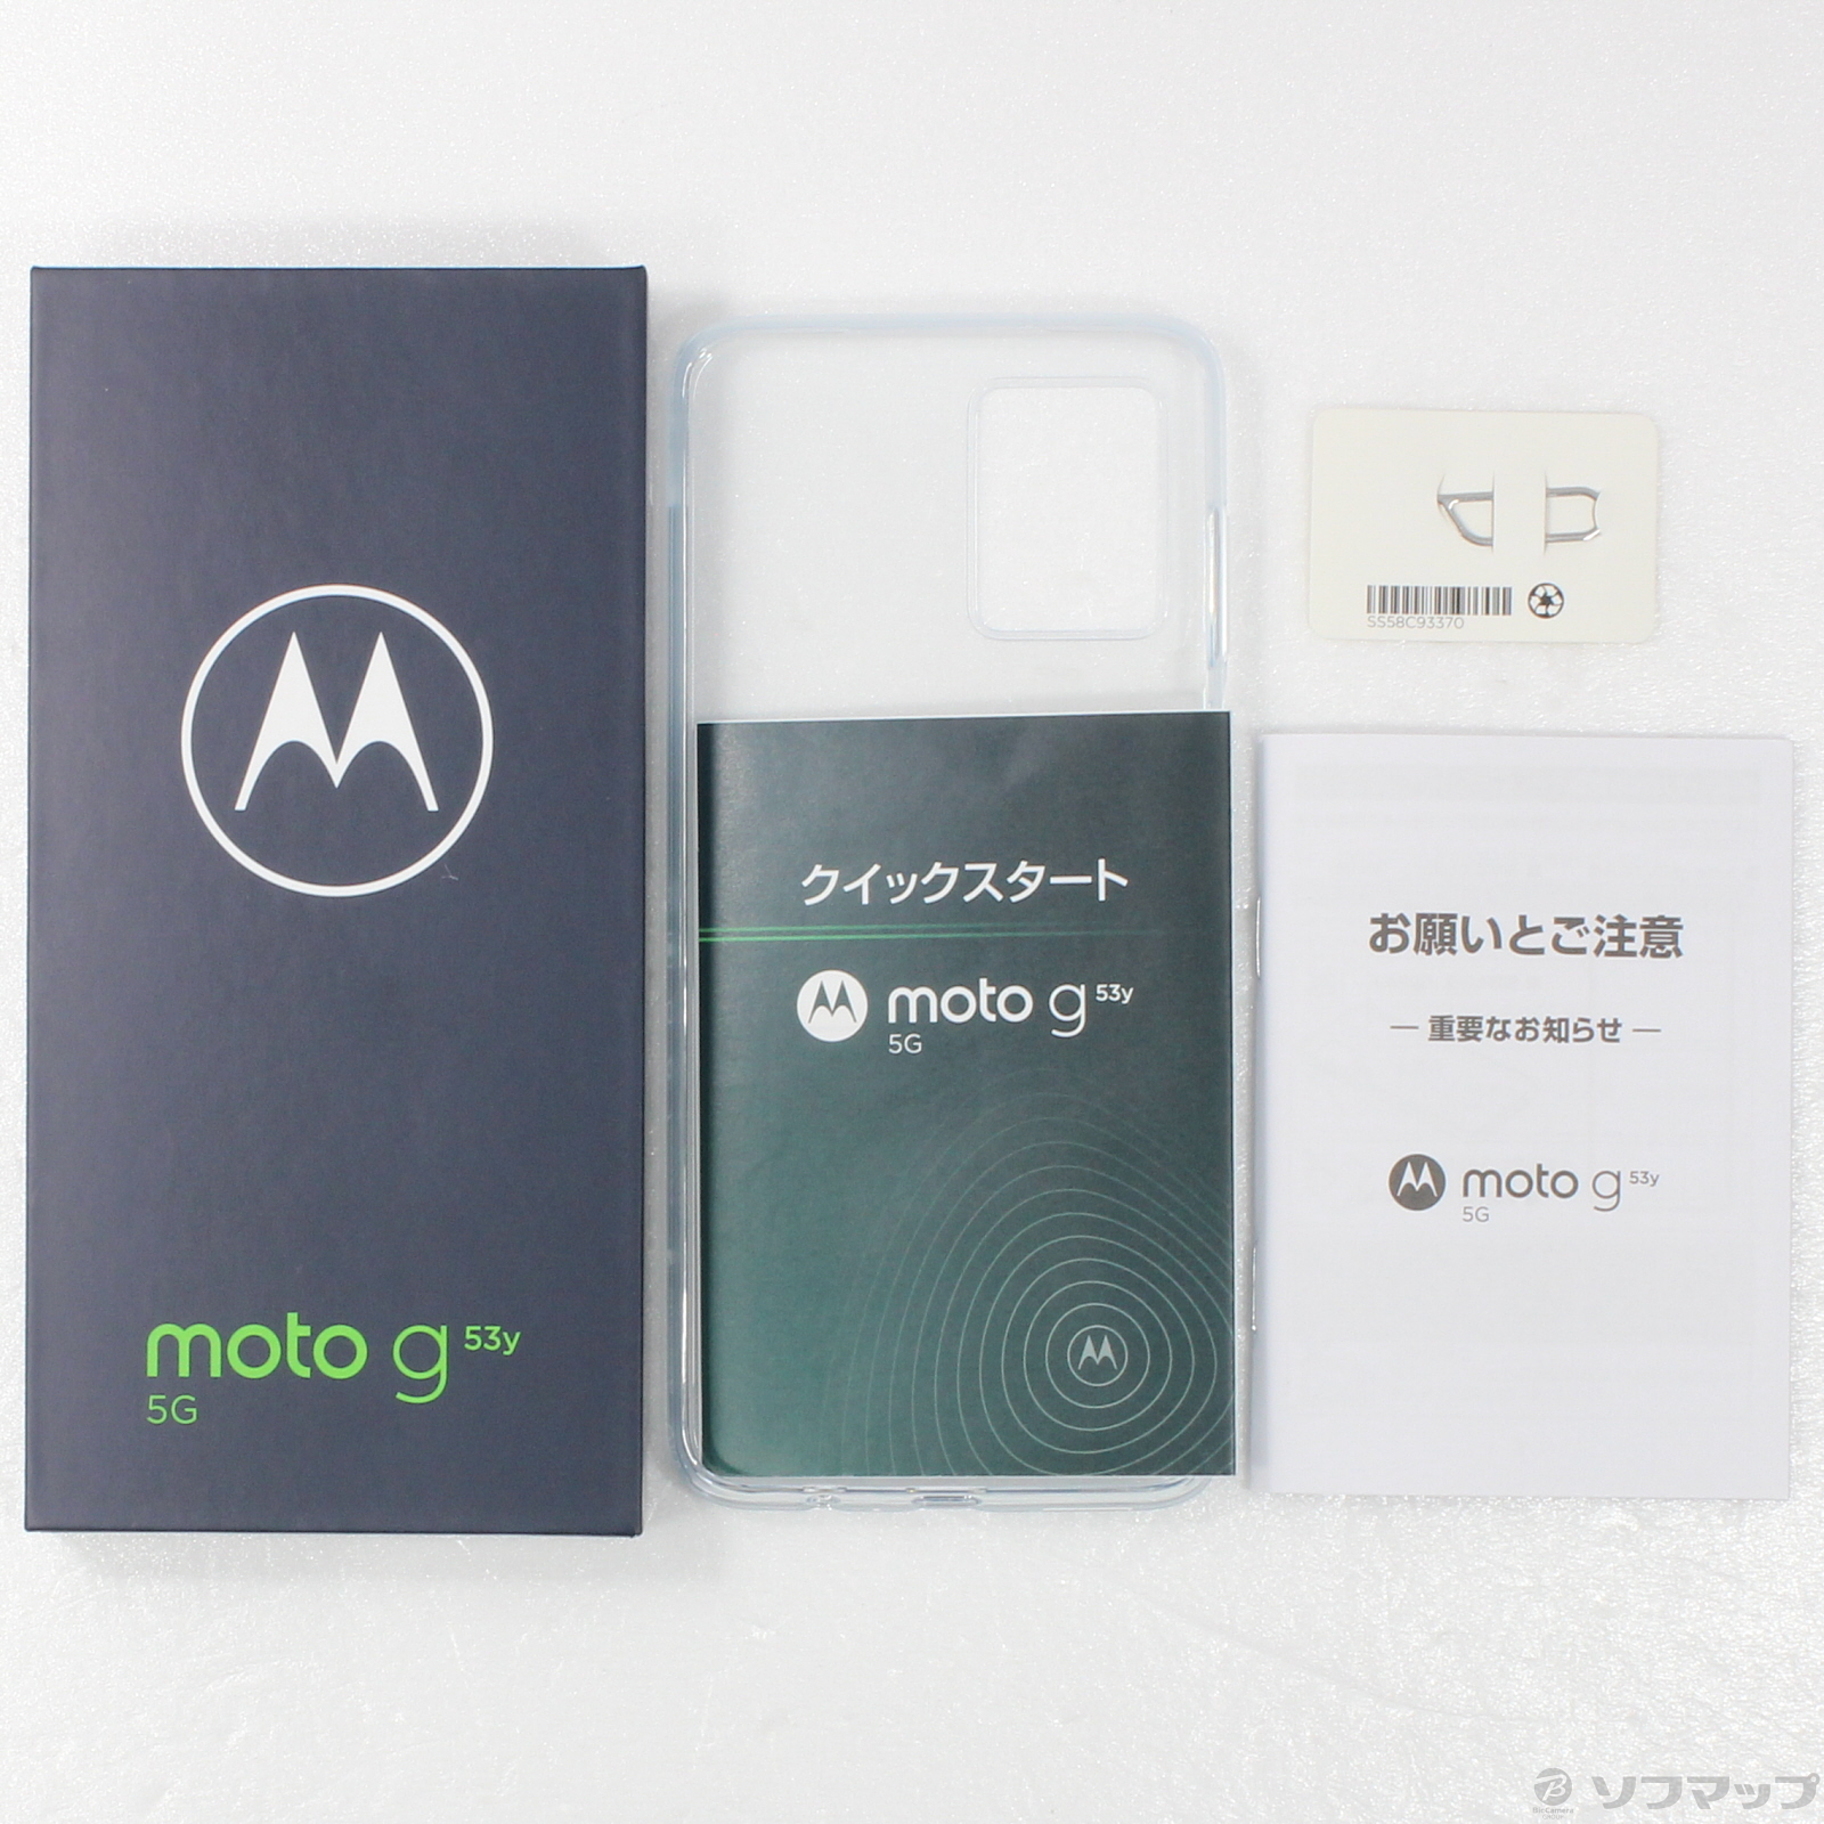 中古】moto g53y 5G 128GB ペールピンク MOSAD3 Y!mobile ...